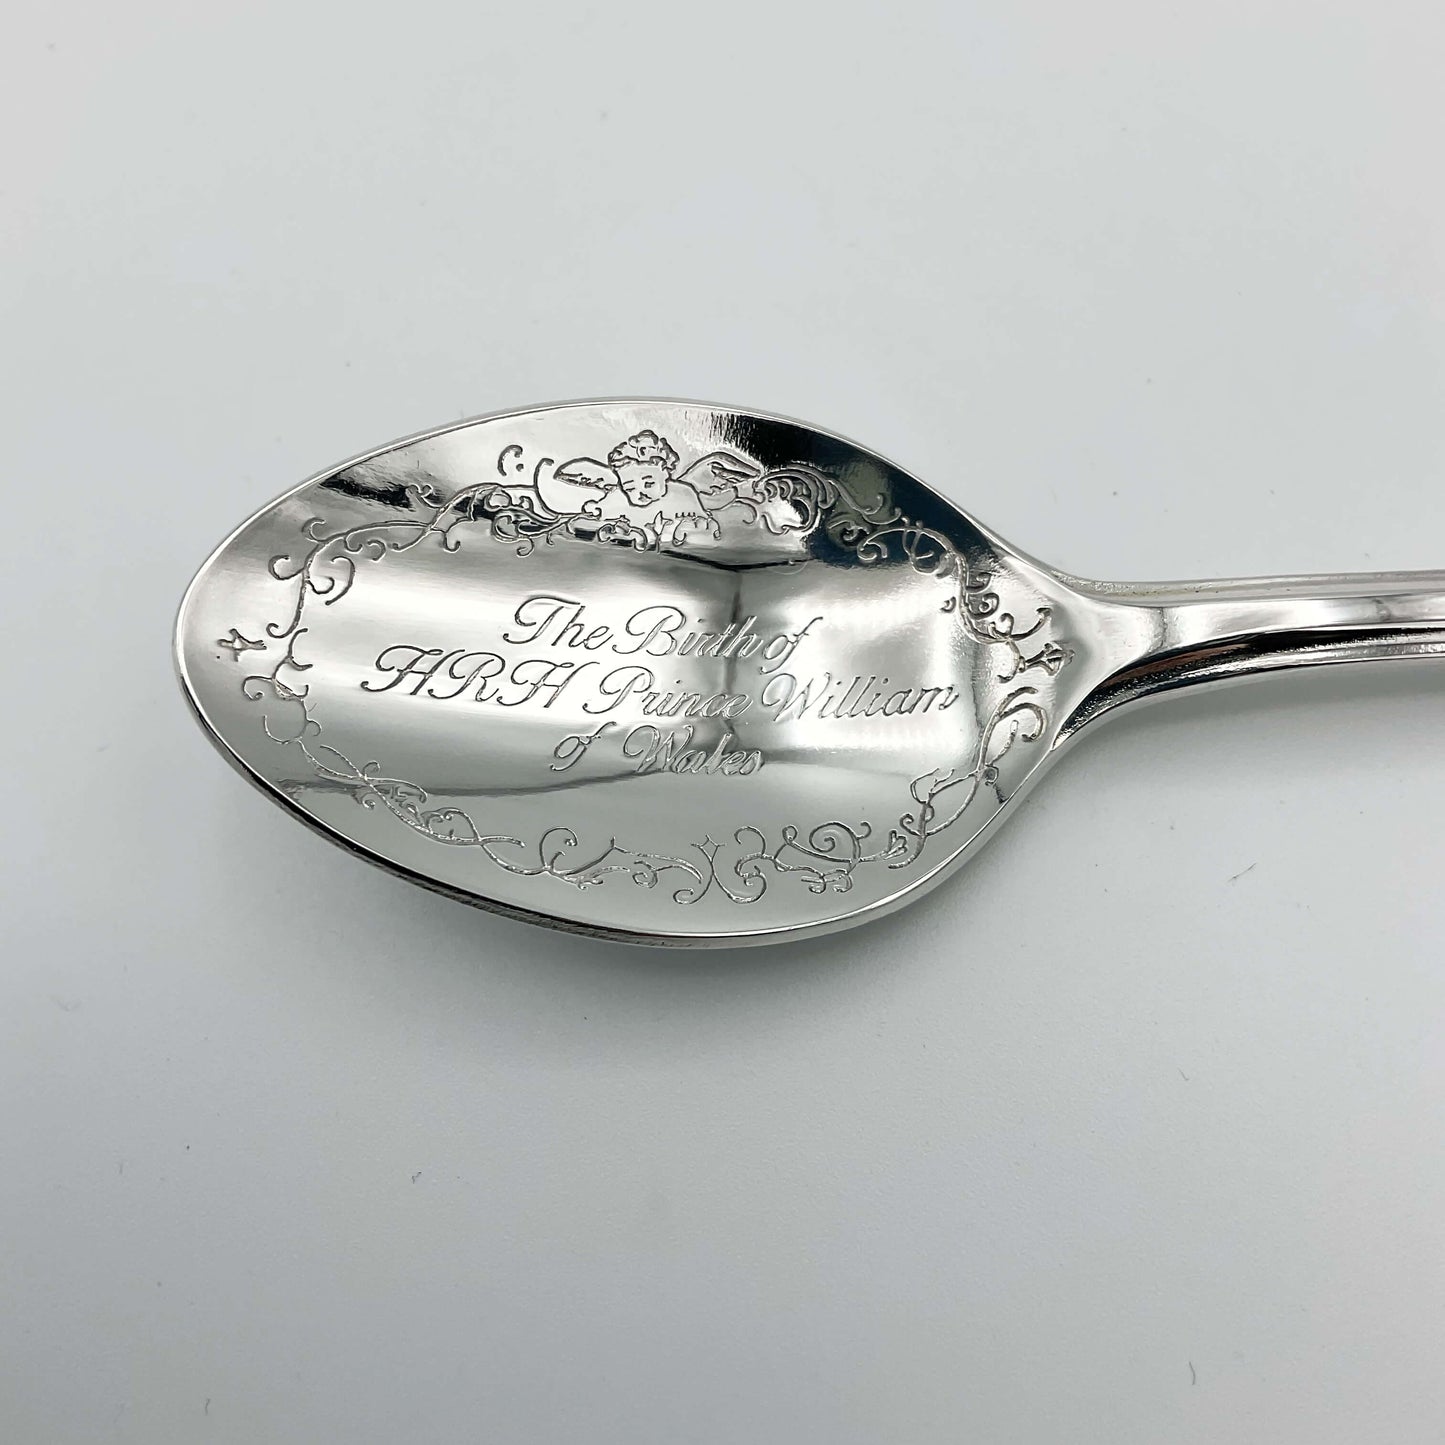 Birth of Prince William Commemorative Spoon